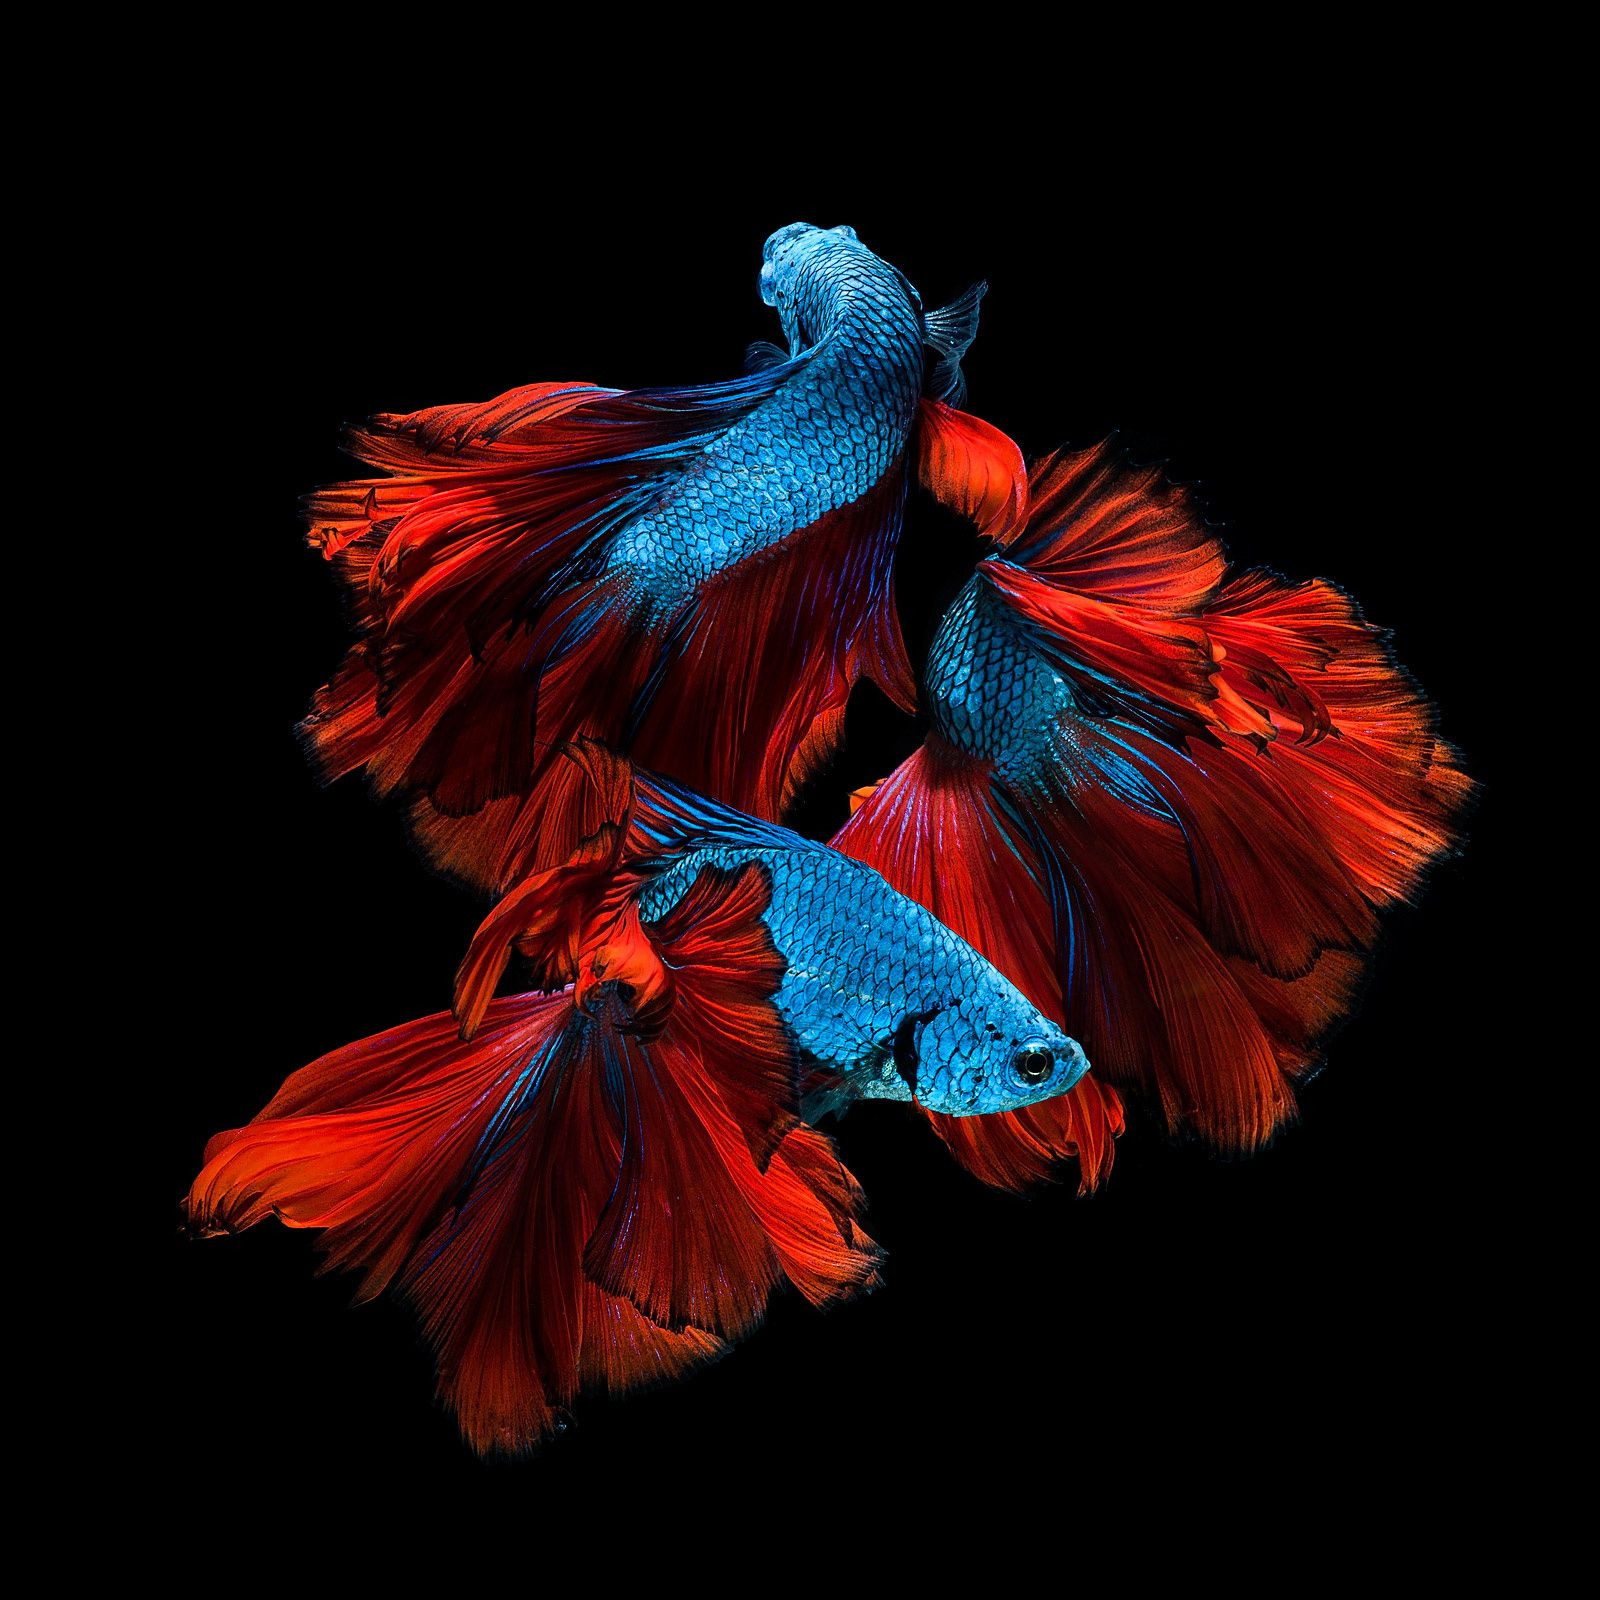 fondos de pantalla de peces luchadores siameses,rojo,azul,pluma,ala